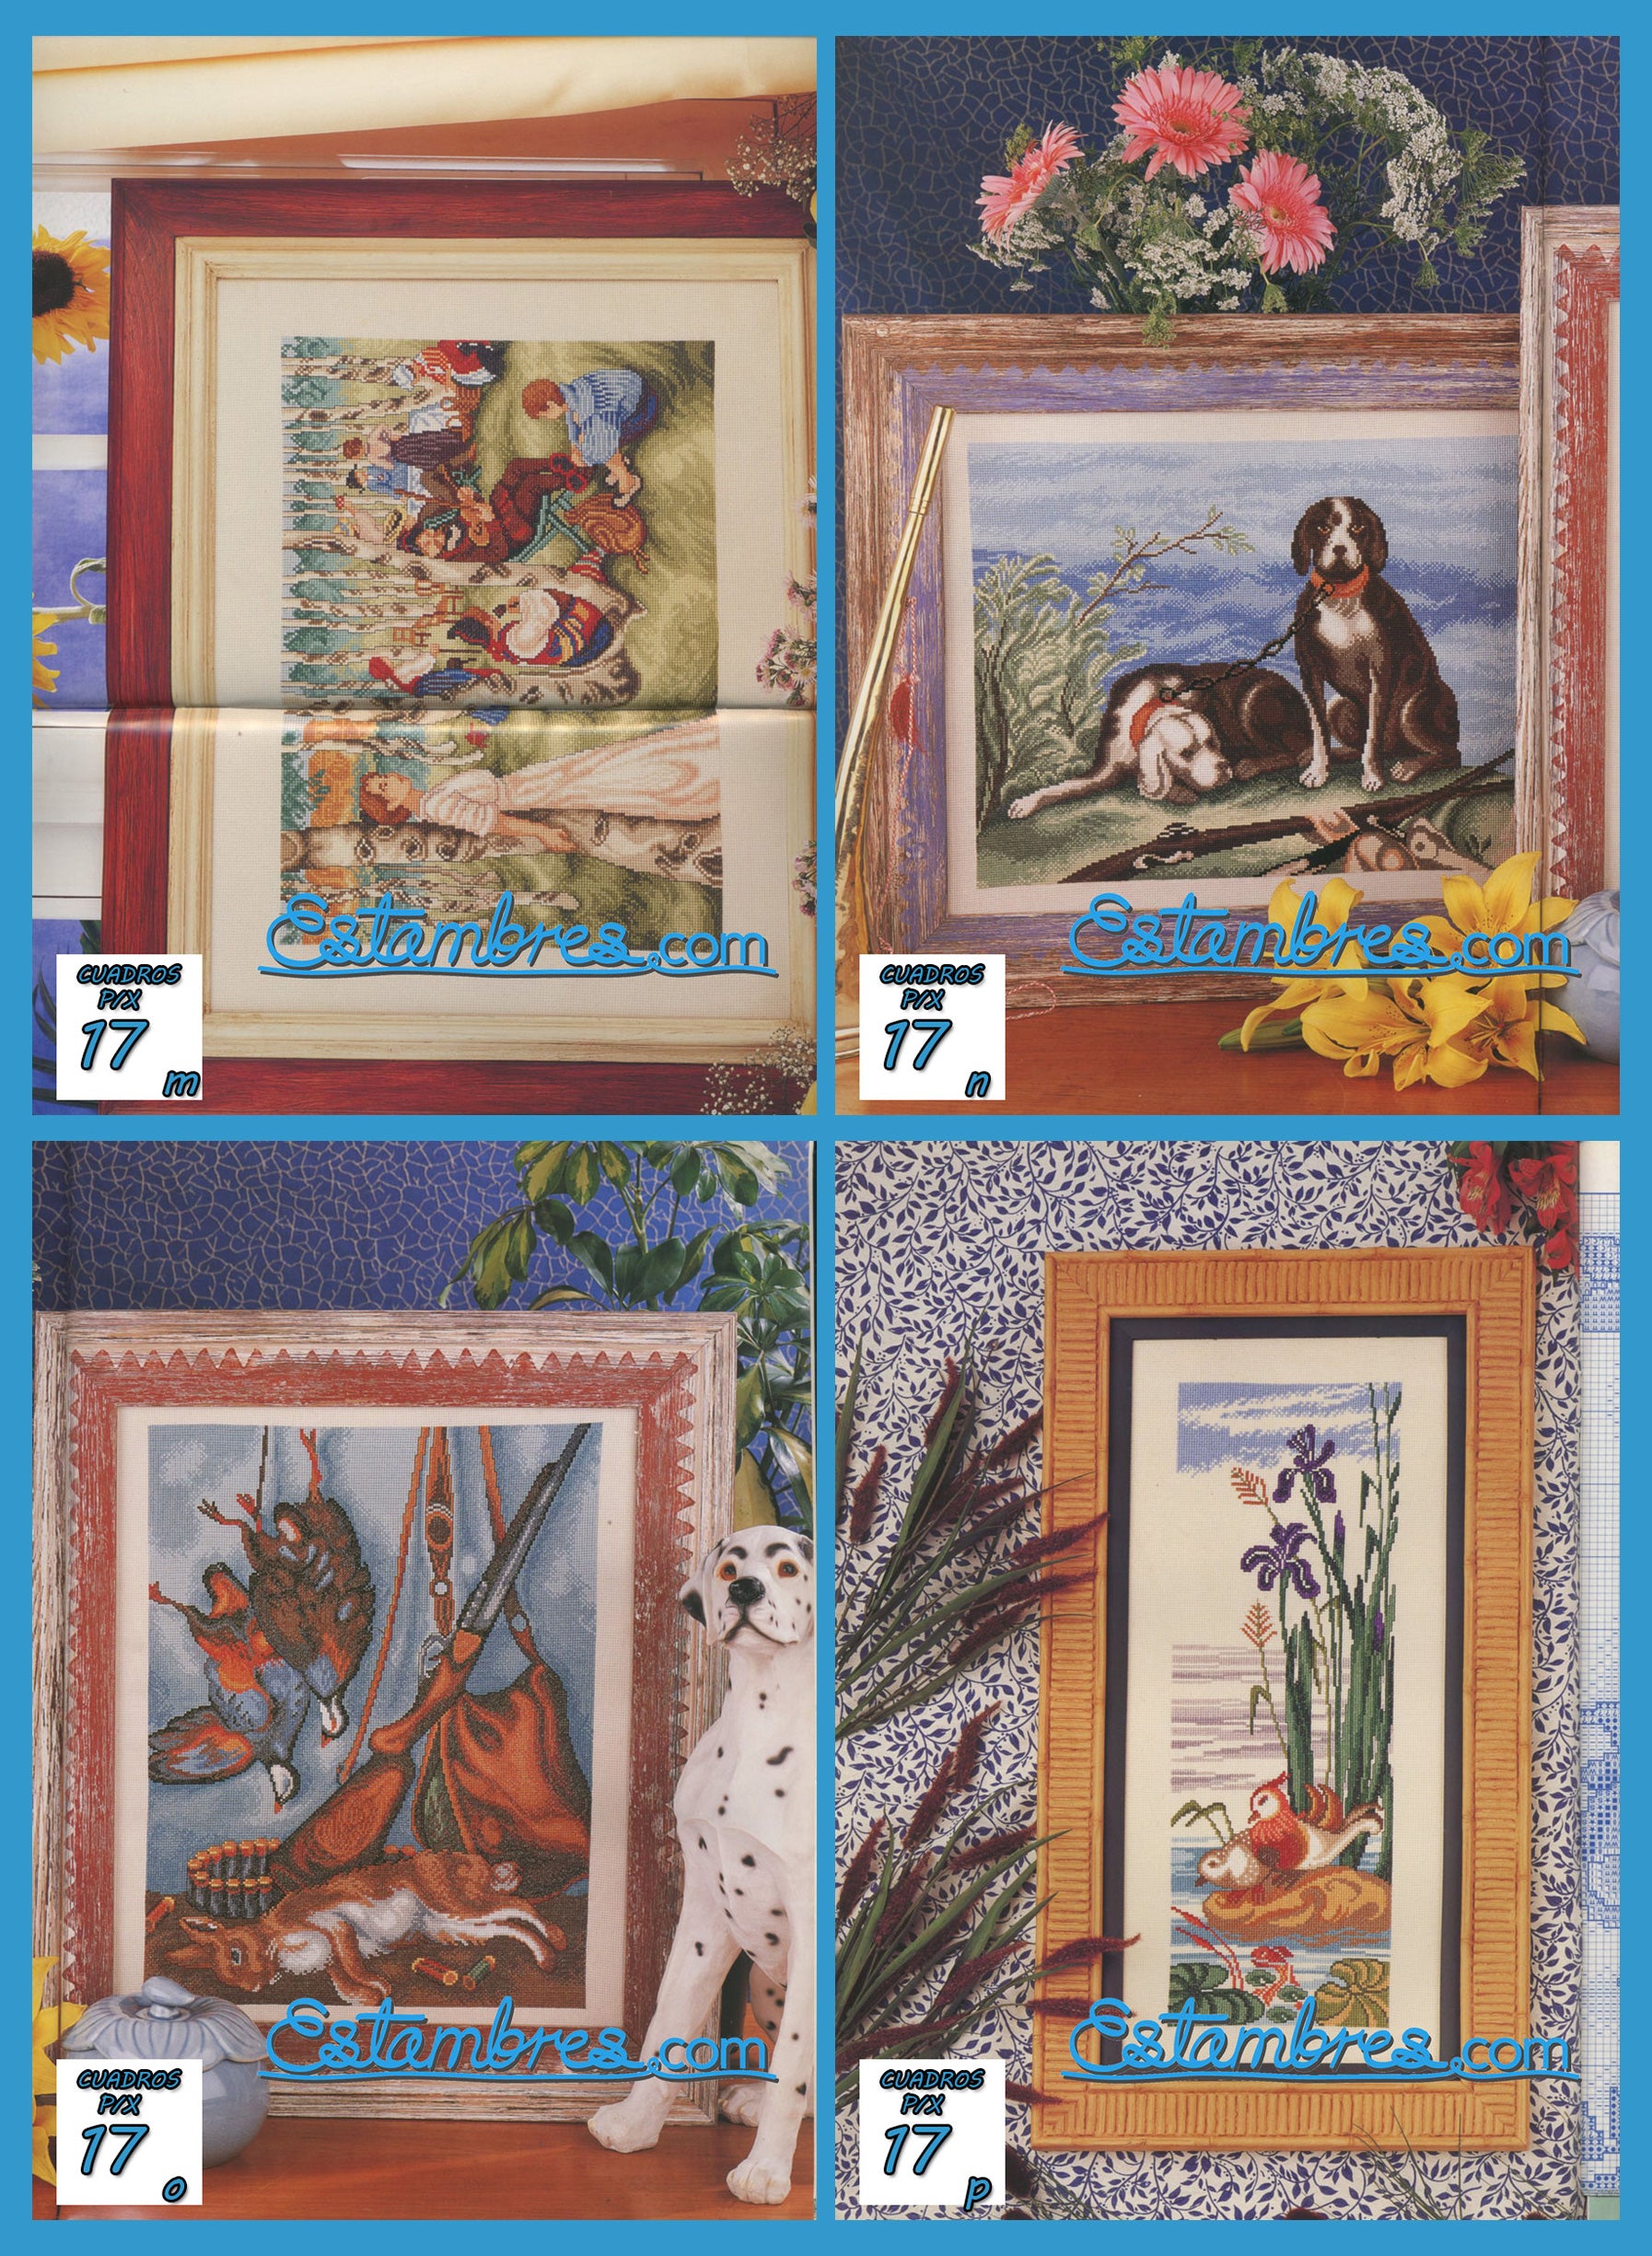 Revista Española Cuadros en Punto de Cruz, contiene muestras elaboradas en punto de cruz, con sus respectivos esquemas de Punto de Cruz, y su respectiva lista de colores a usar, para cada grafico.